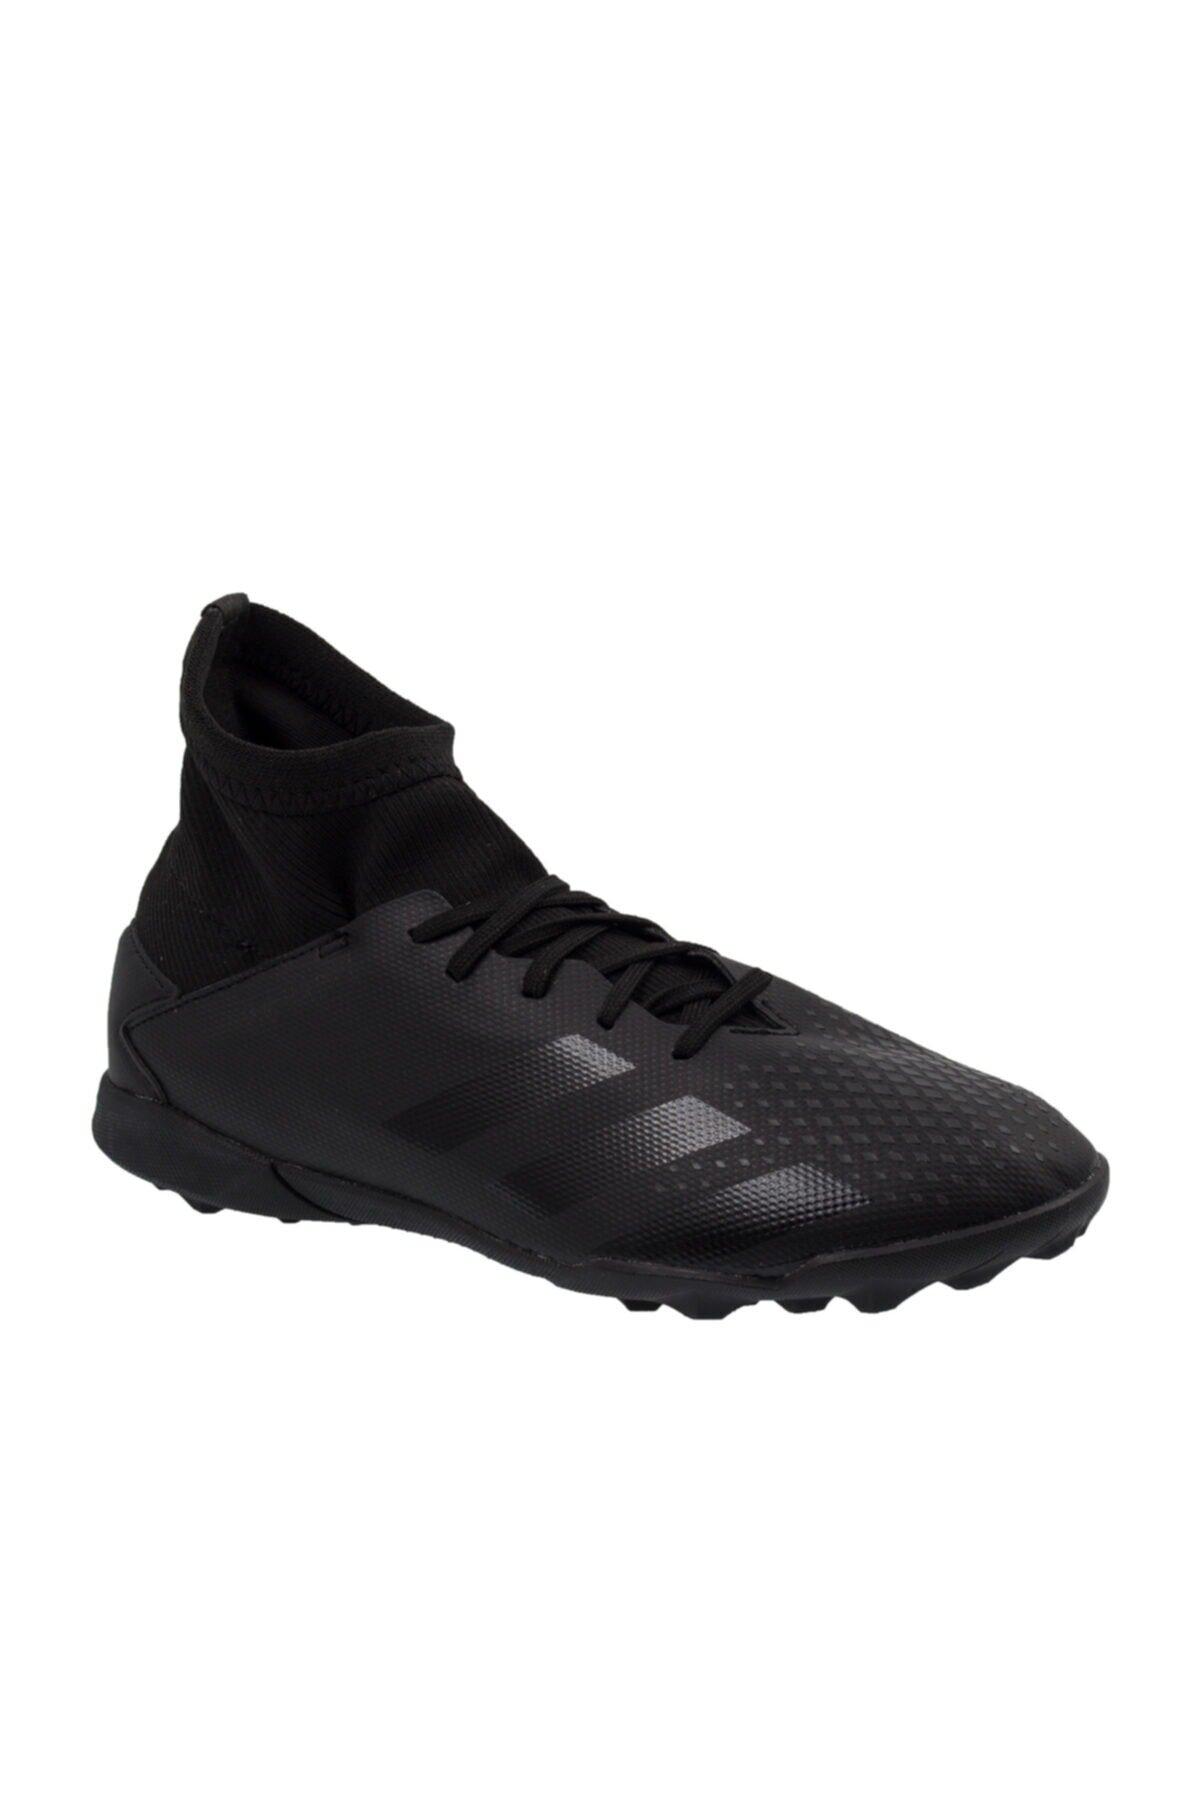 adidas Predator 20.3 Çocuk Siyah Halı Saha Ayakkabısı